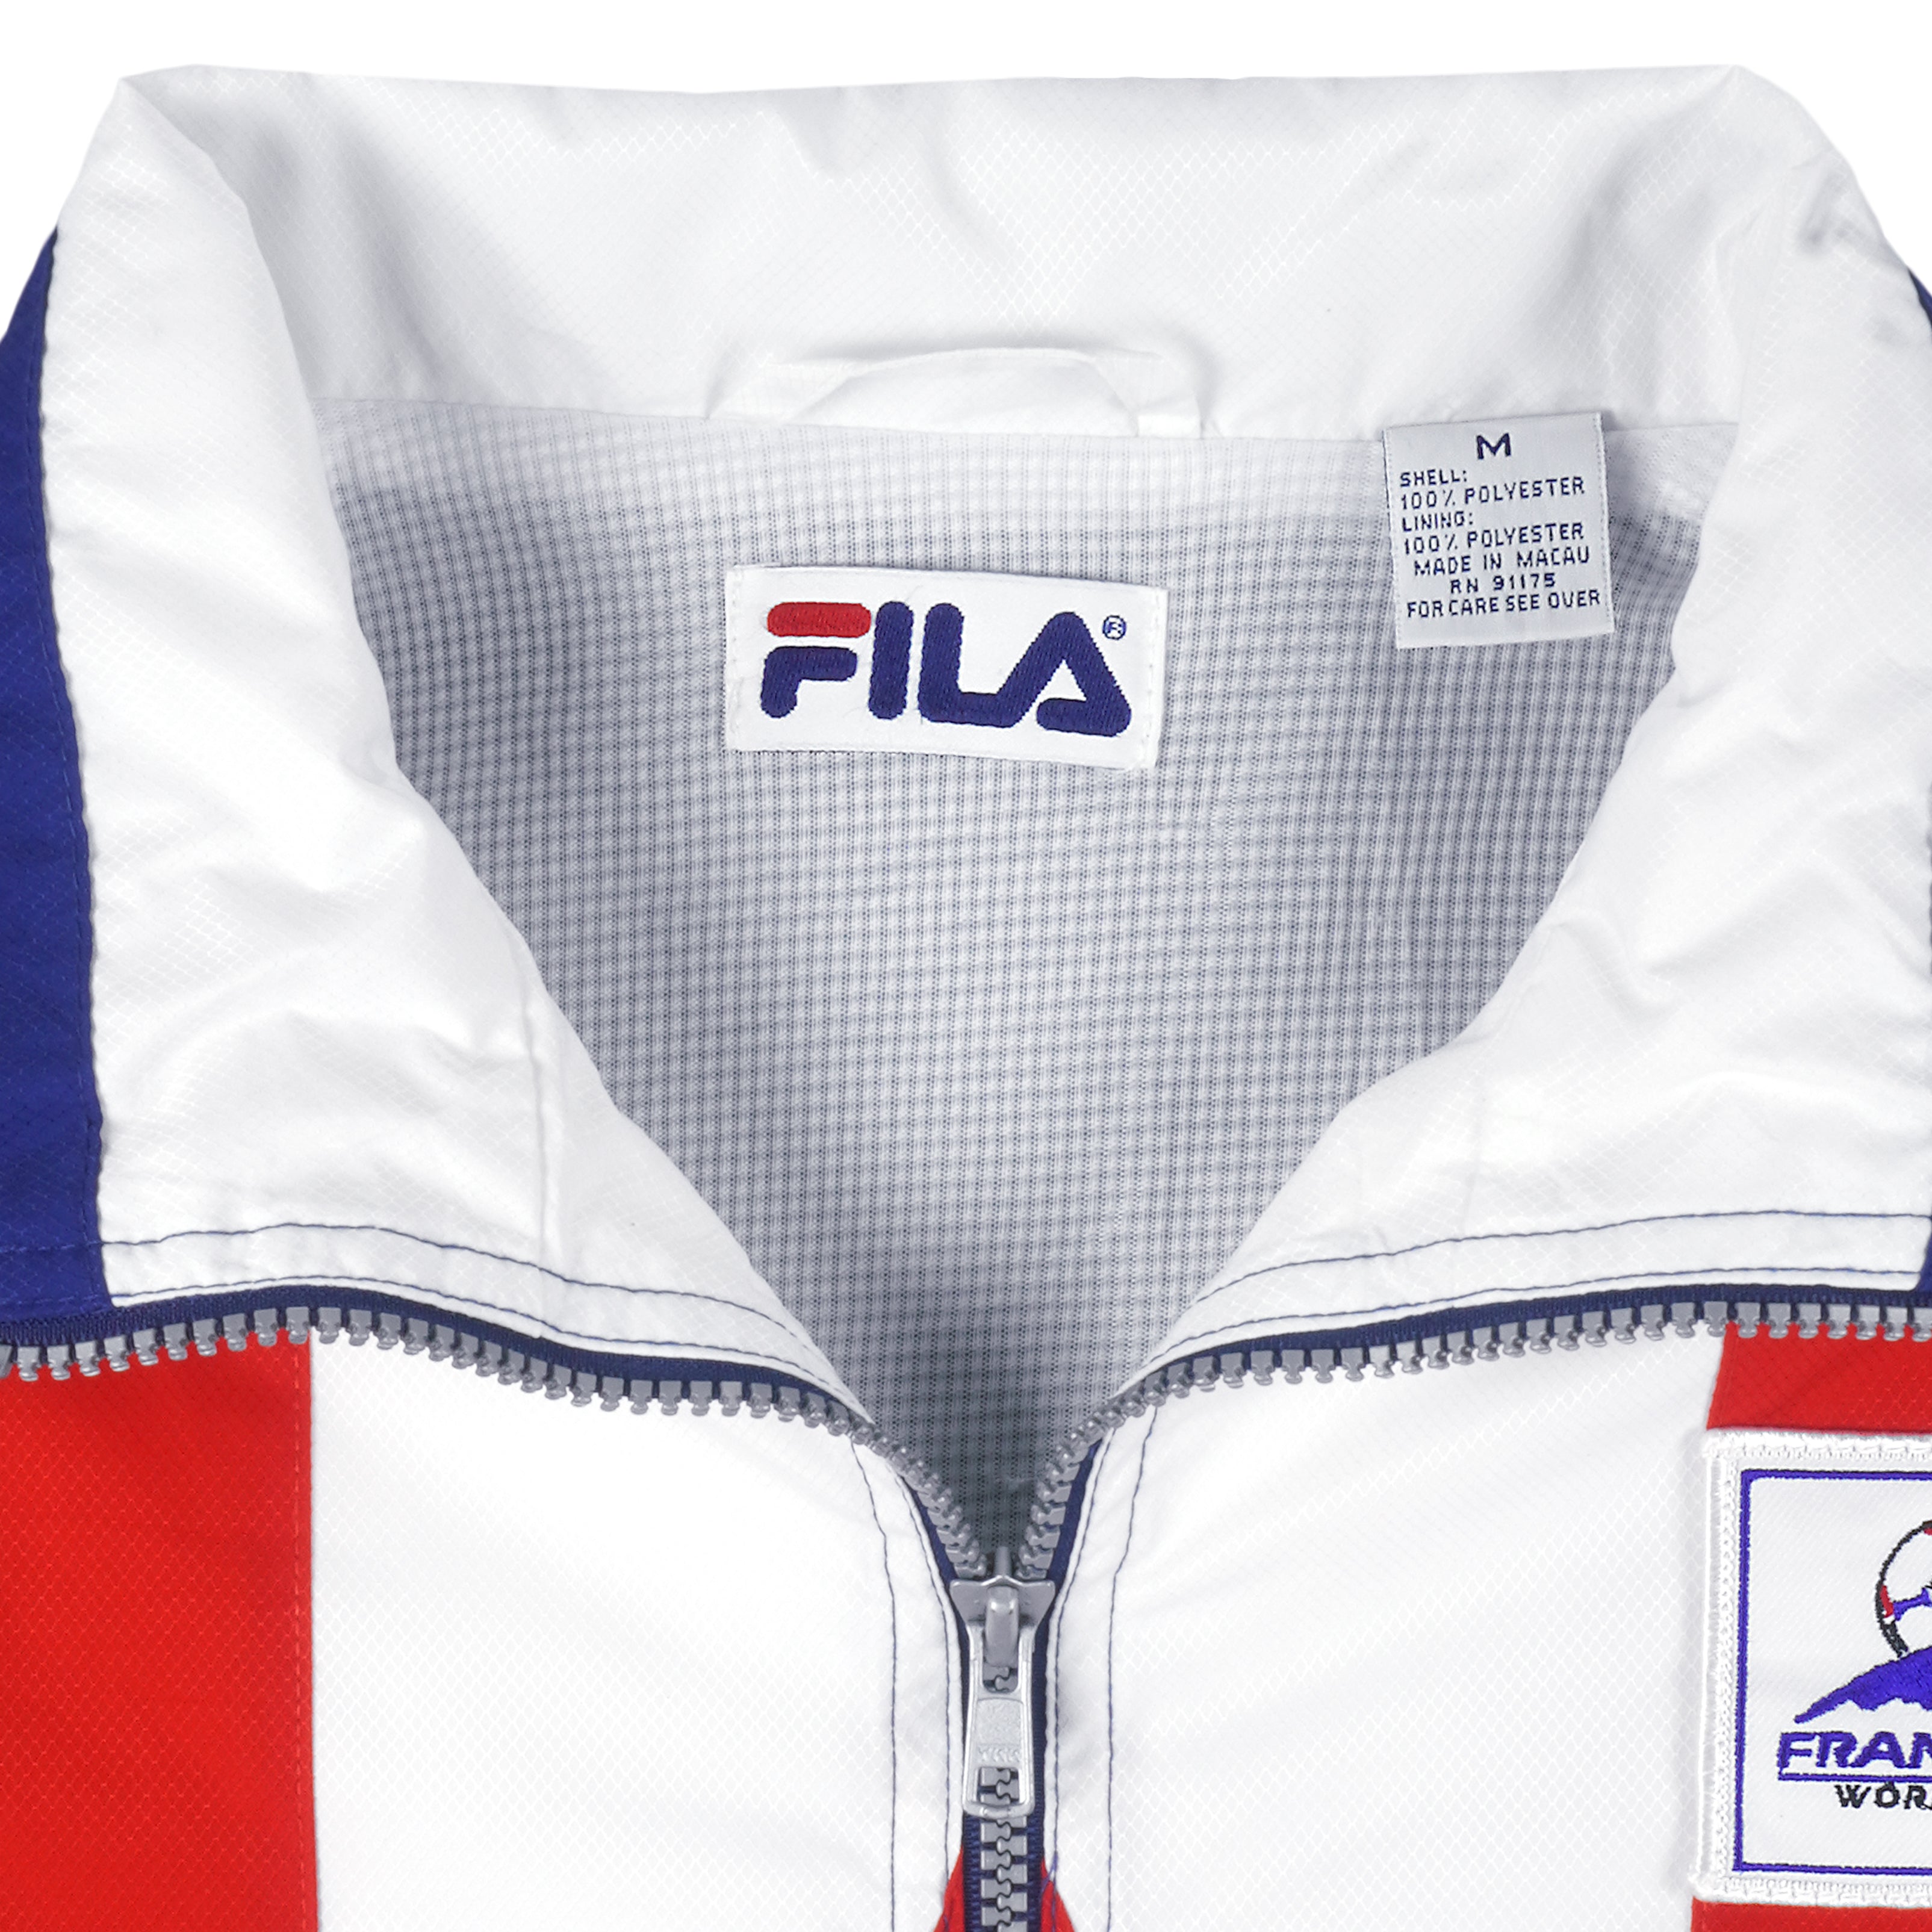 dreng At øge Vil Vintage FILA - Soccer Team America France World Cup Jacket 1998 Medium –  Vintage Club Clothing